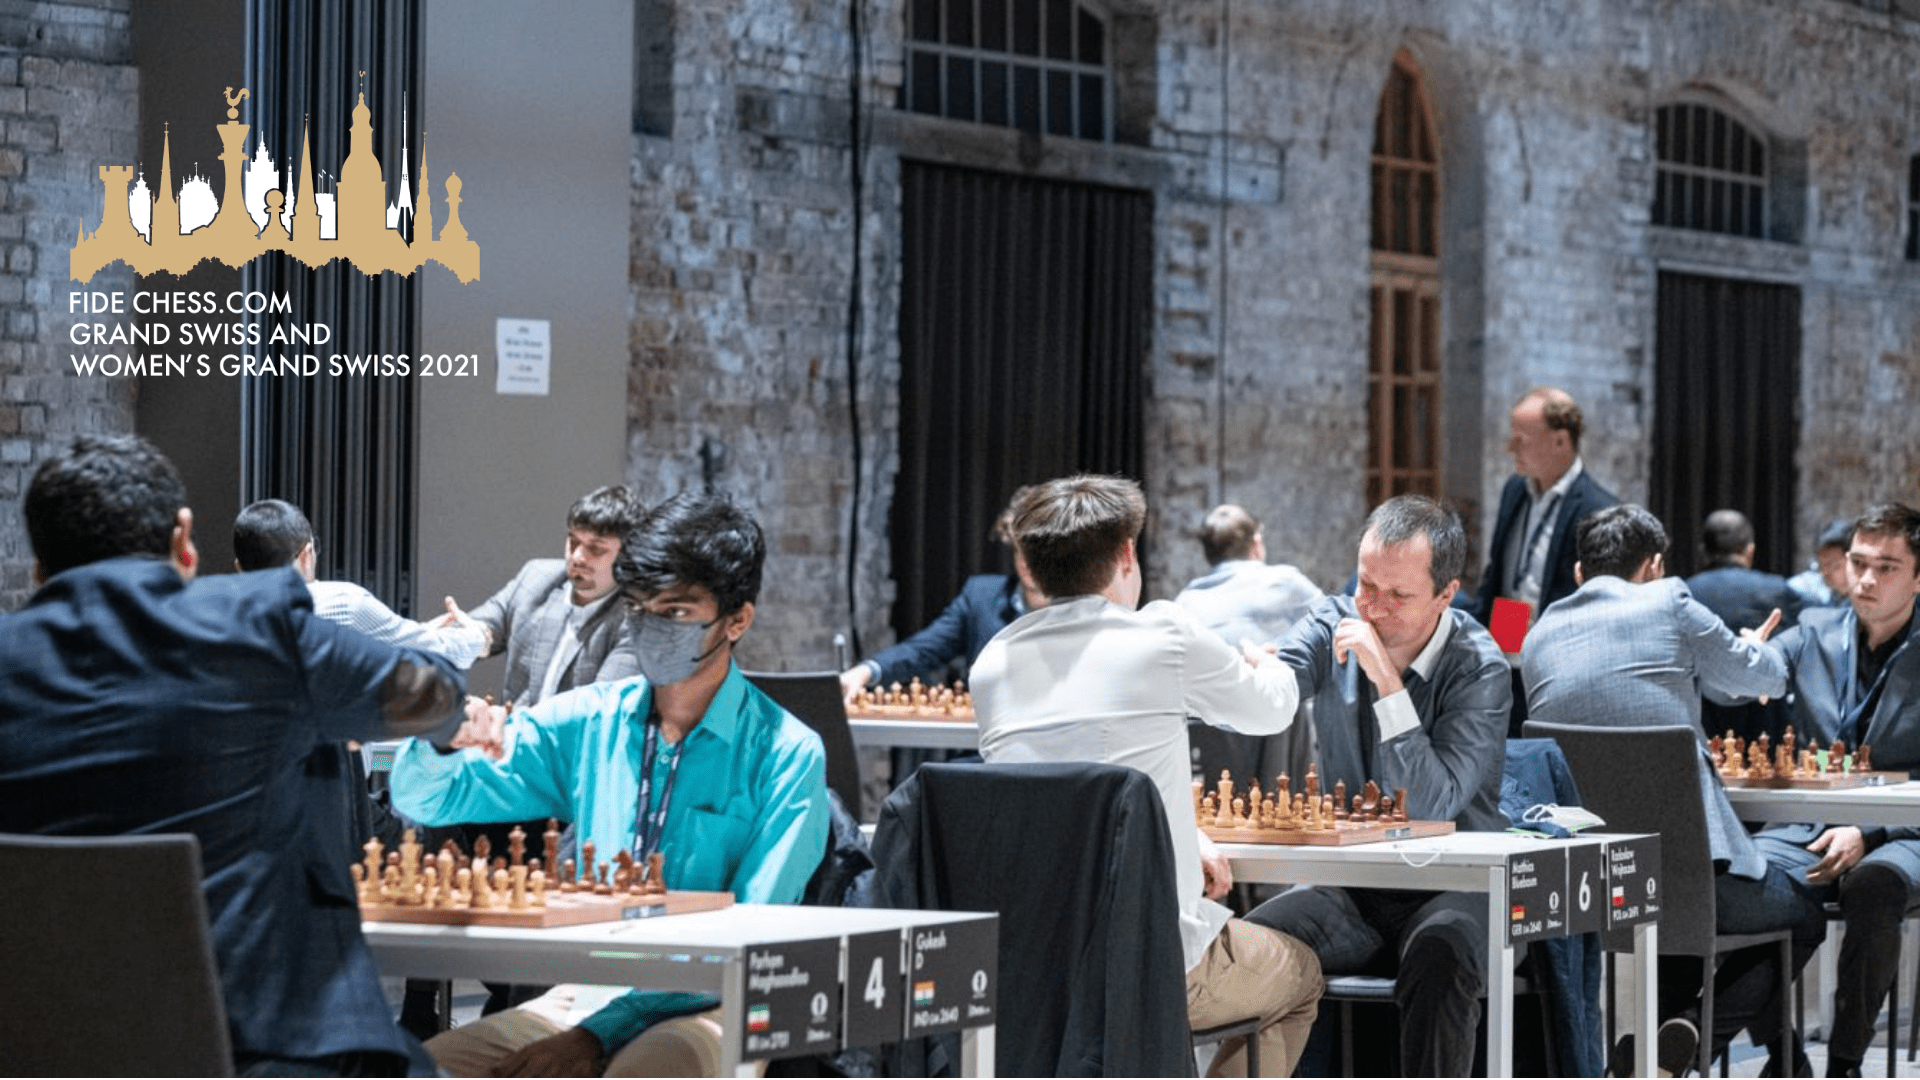 Grand Swiss 1: Caruana and Firouzja strike